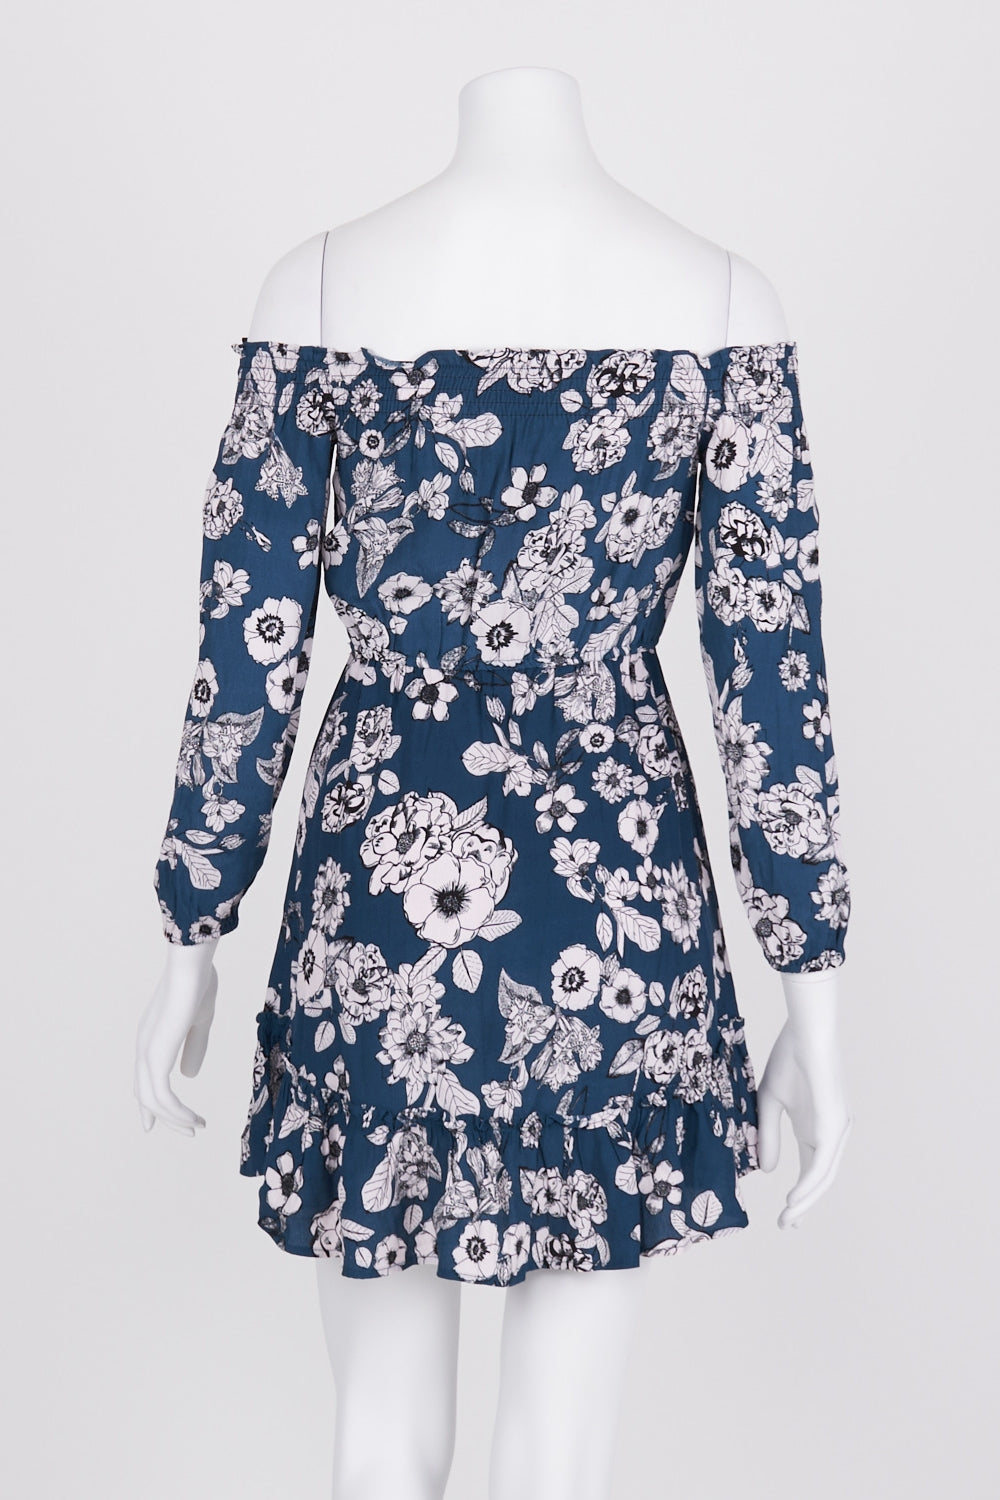 Bardot Teal Floral Off Shoulder Dress 6